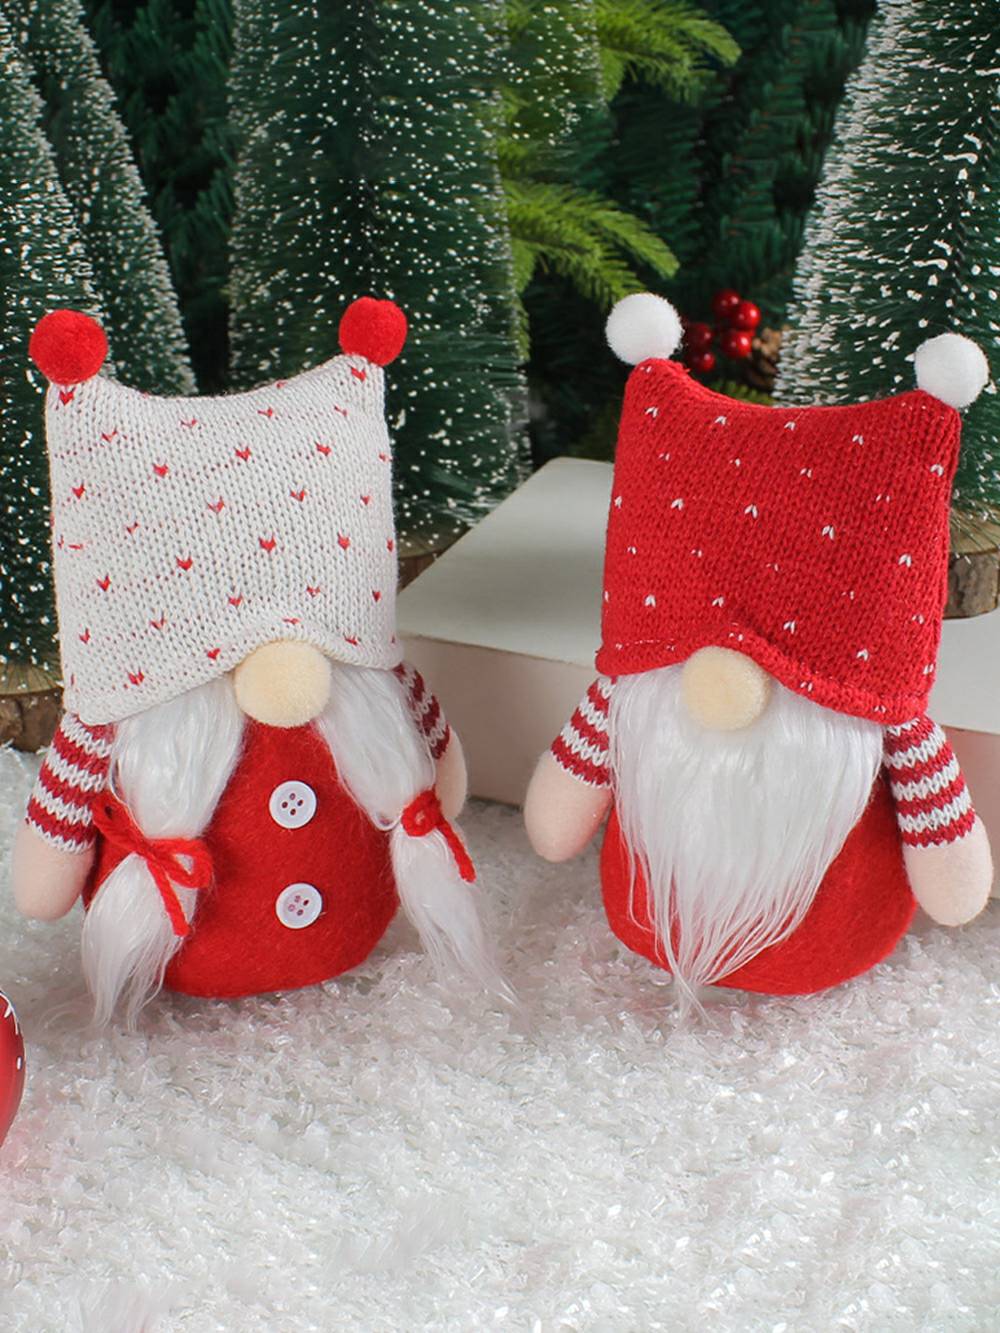 Adorable pareja de elfos de peluche navideños con gorro tejido, muñecos Rudolph